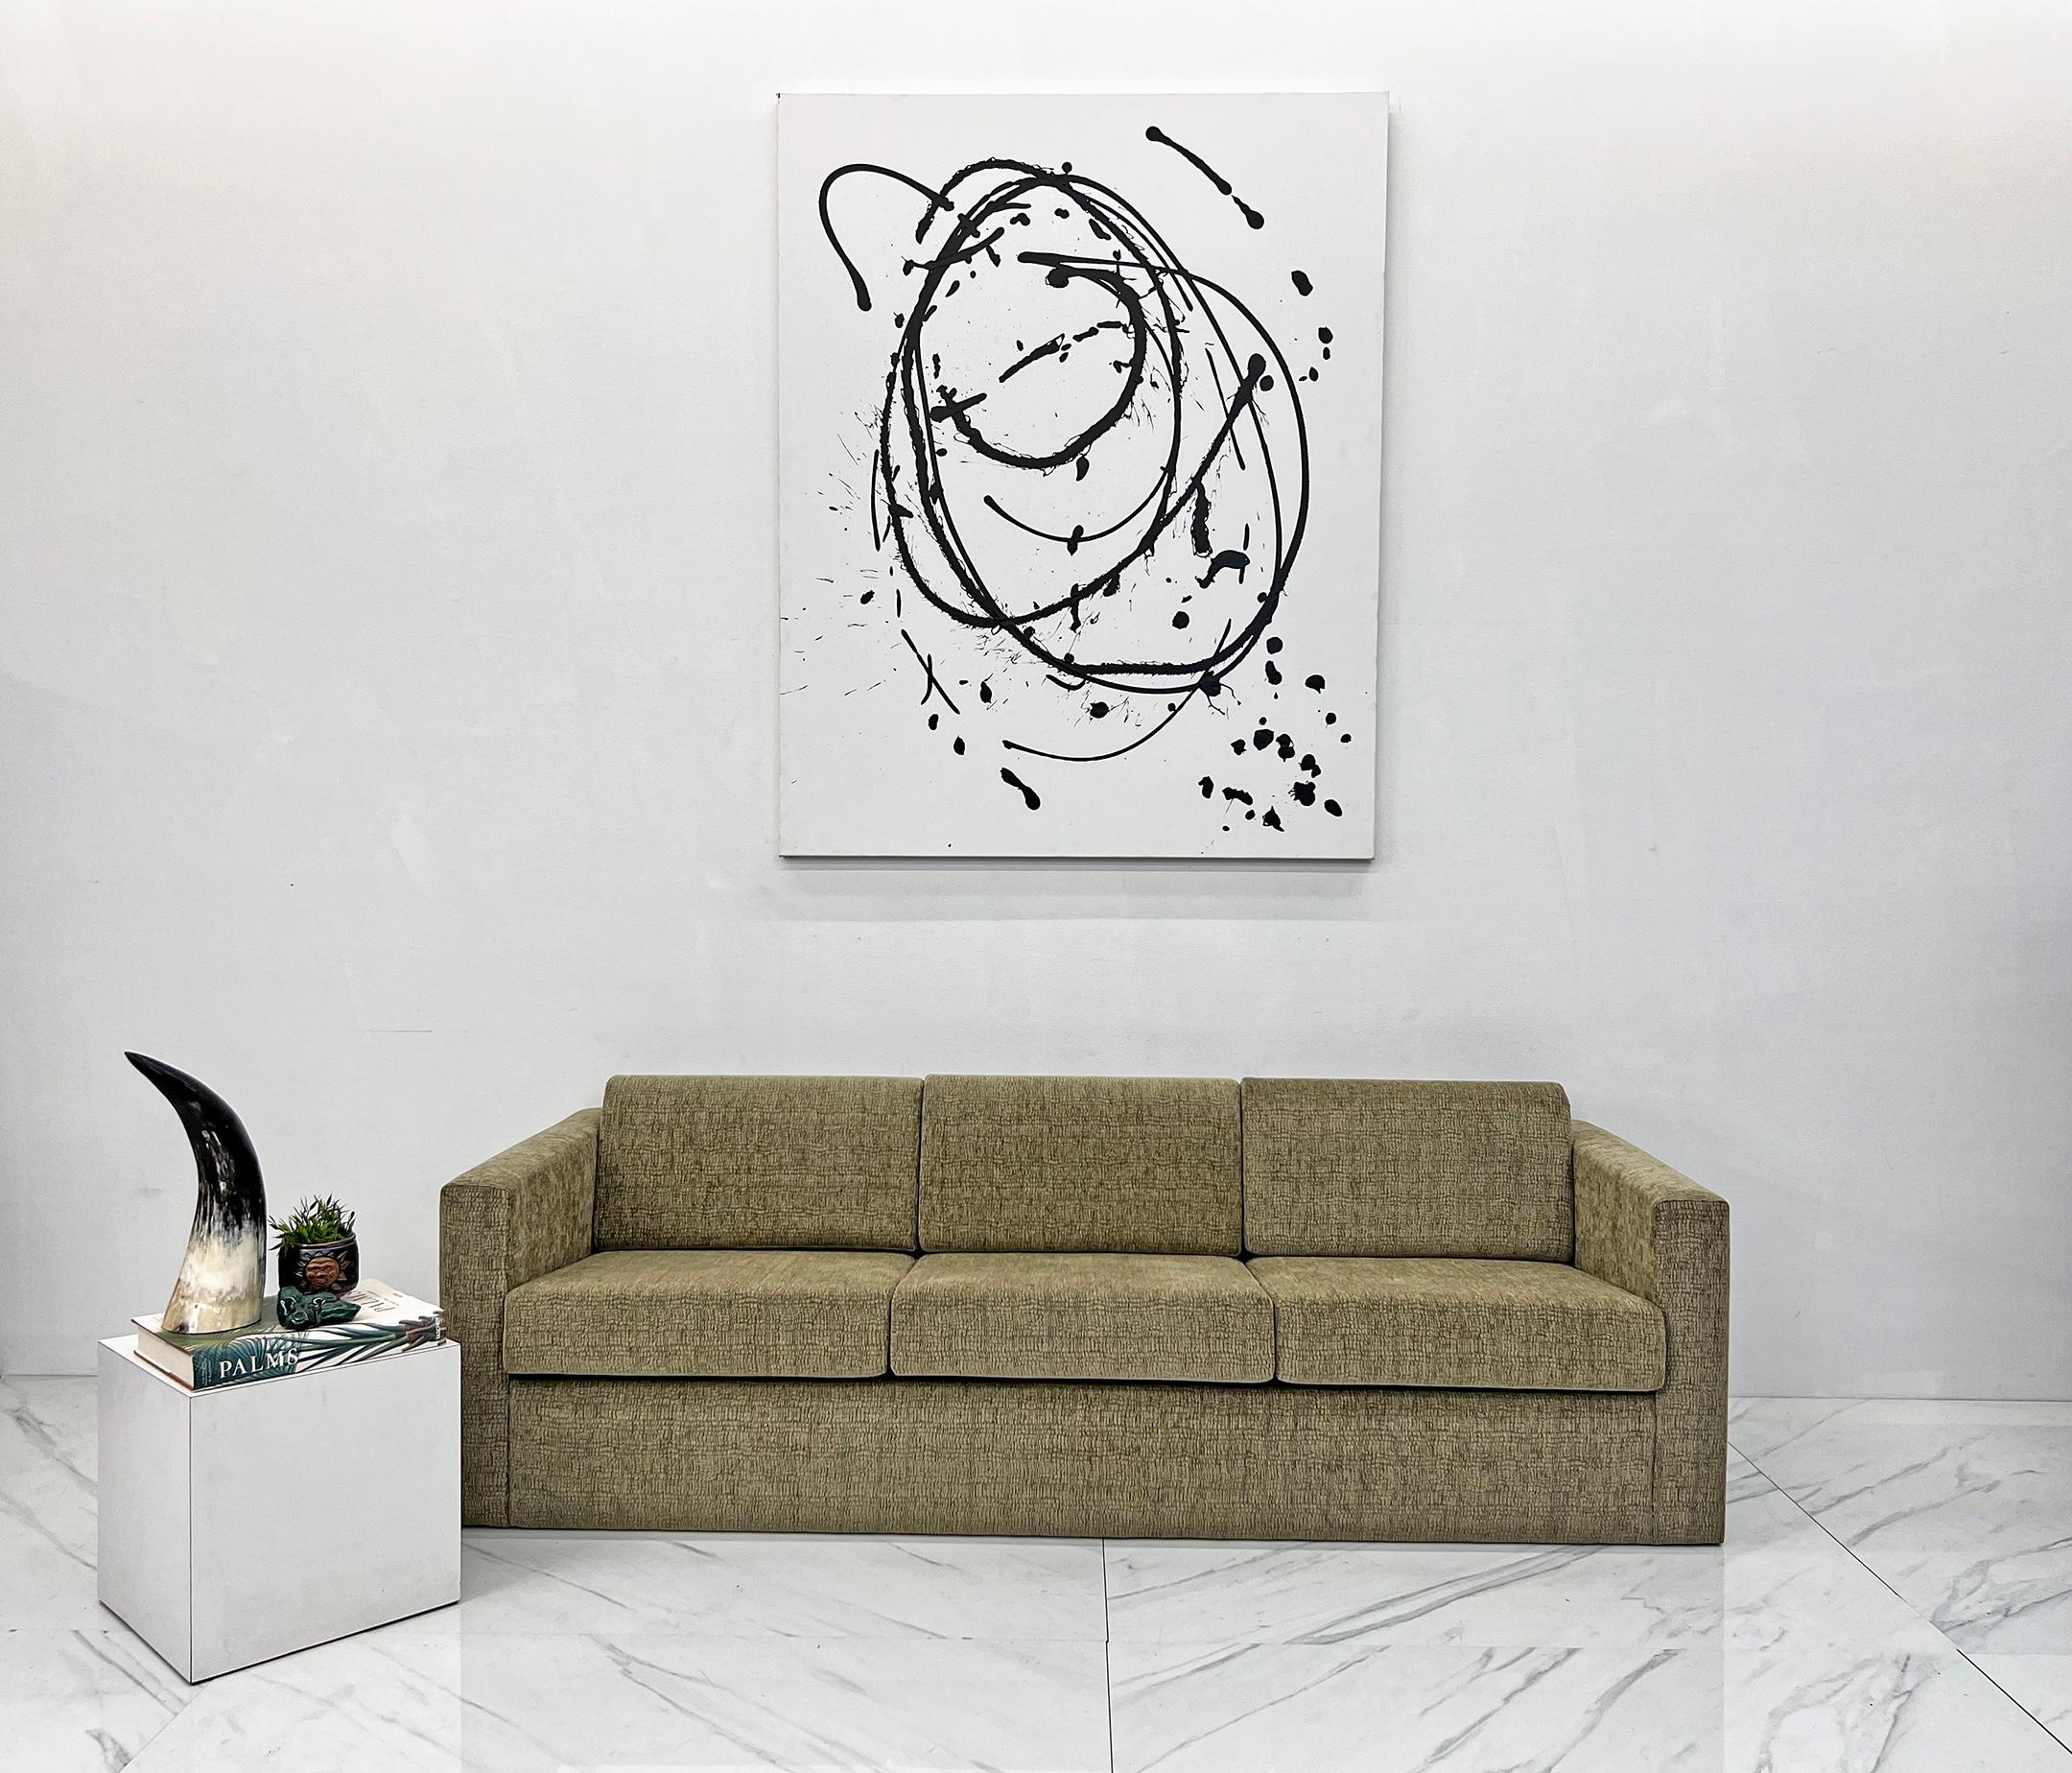 Dieses Sofa ist ein echter Hingucker. Klassisches Design trifft auf zeitgenössische Anziehungskraft bei dieser exquisiten Kreation des legendären Designers Milo Baughman für Thayer Coggin. Dieses luxuriöse, hellbraune Chenille-Sofa mit niedrigem